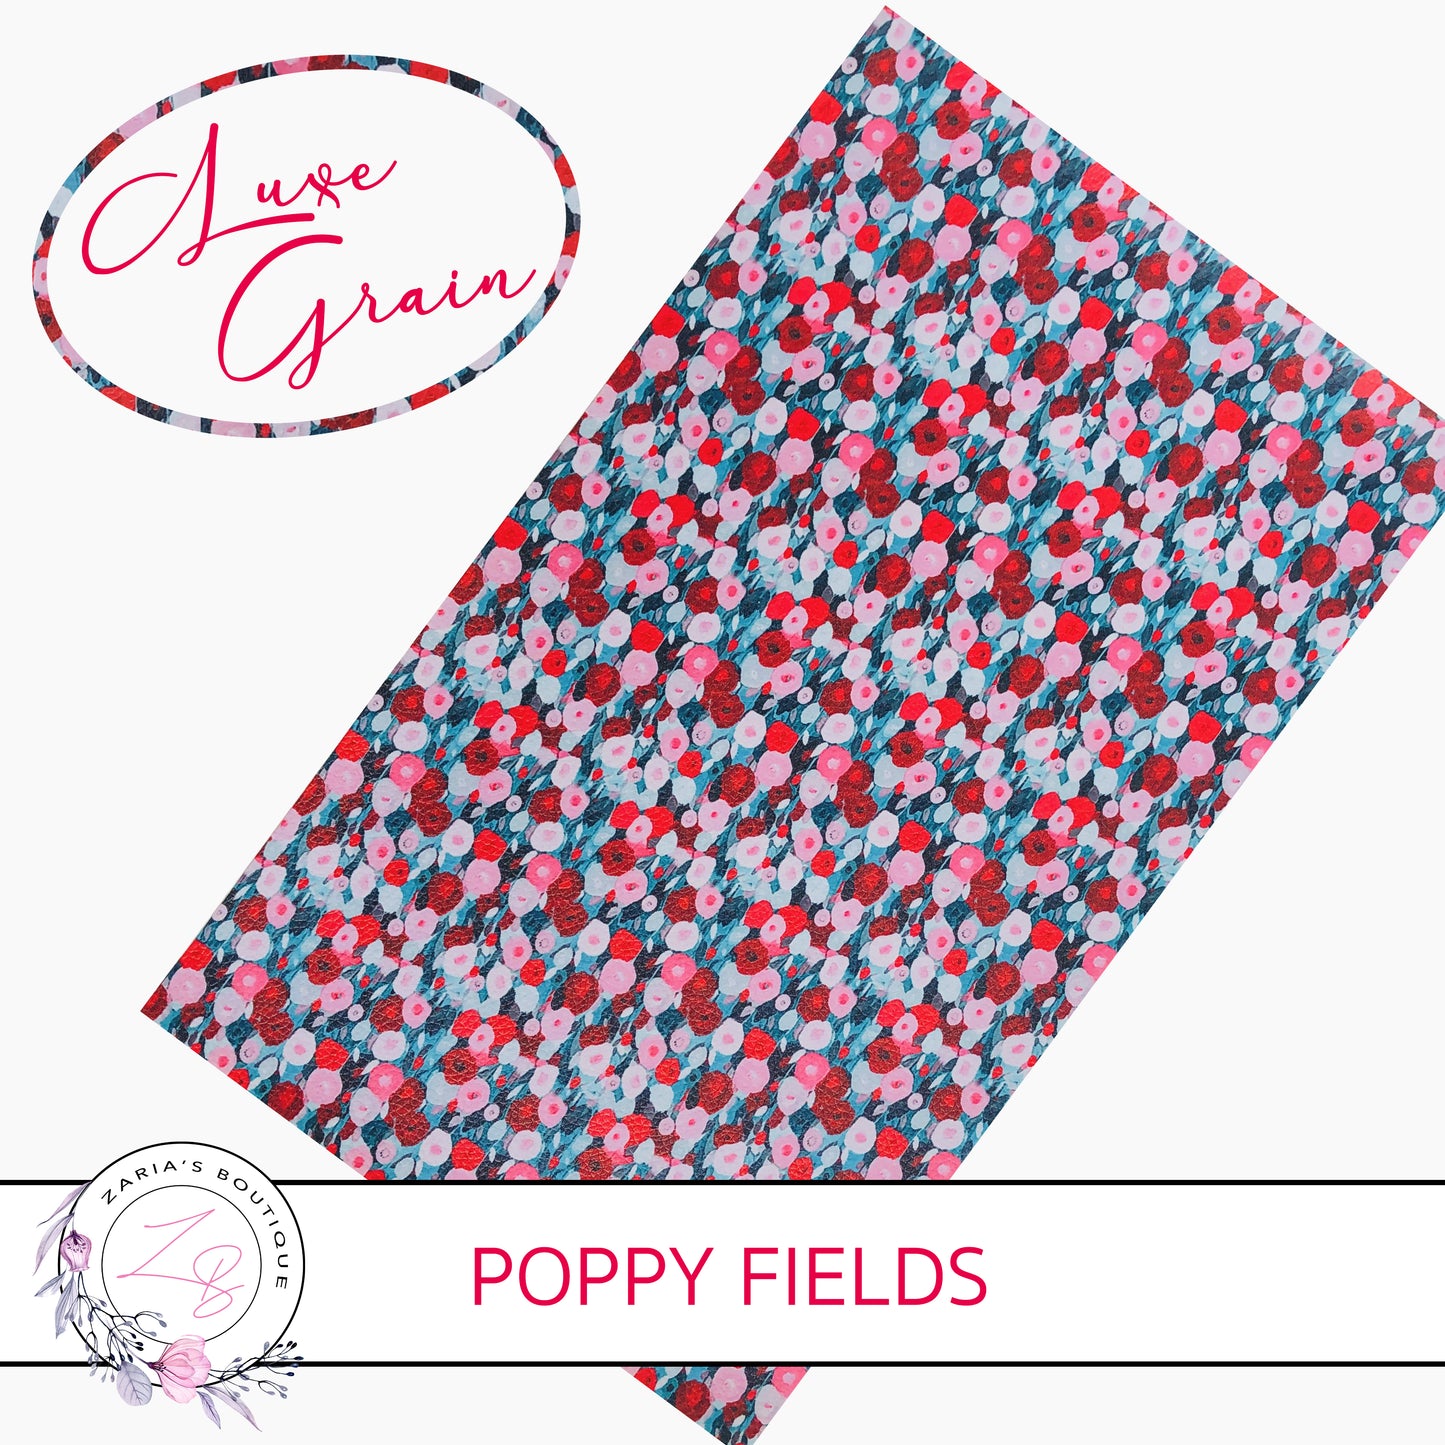 Poppy Fields ⋅ Luxe Grain Vegan Faux Leather